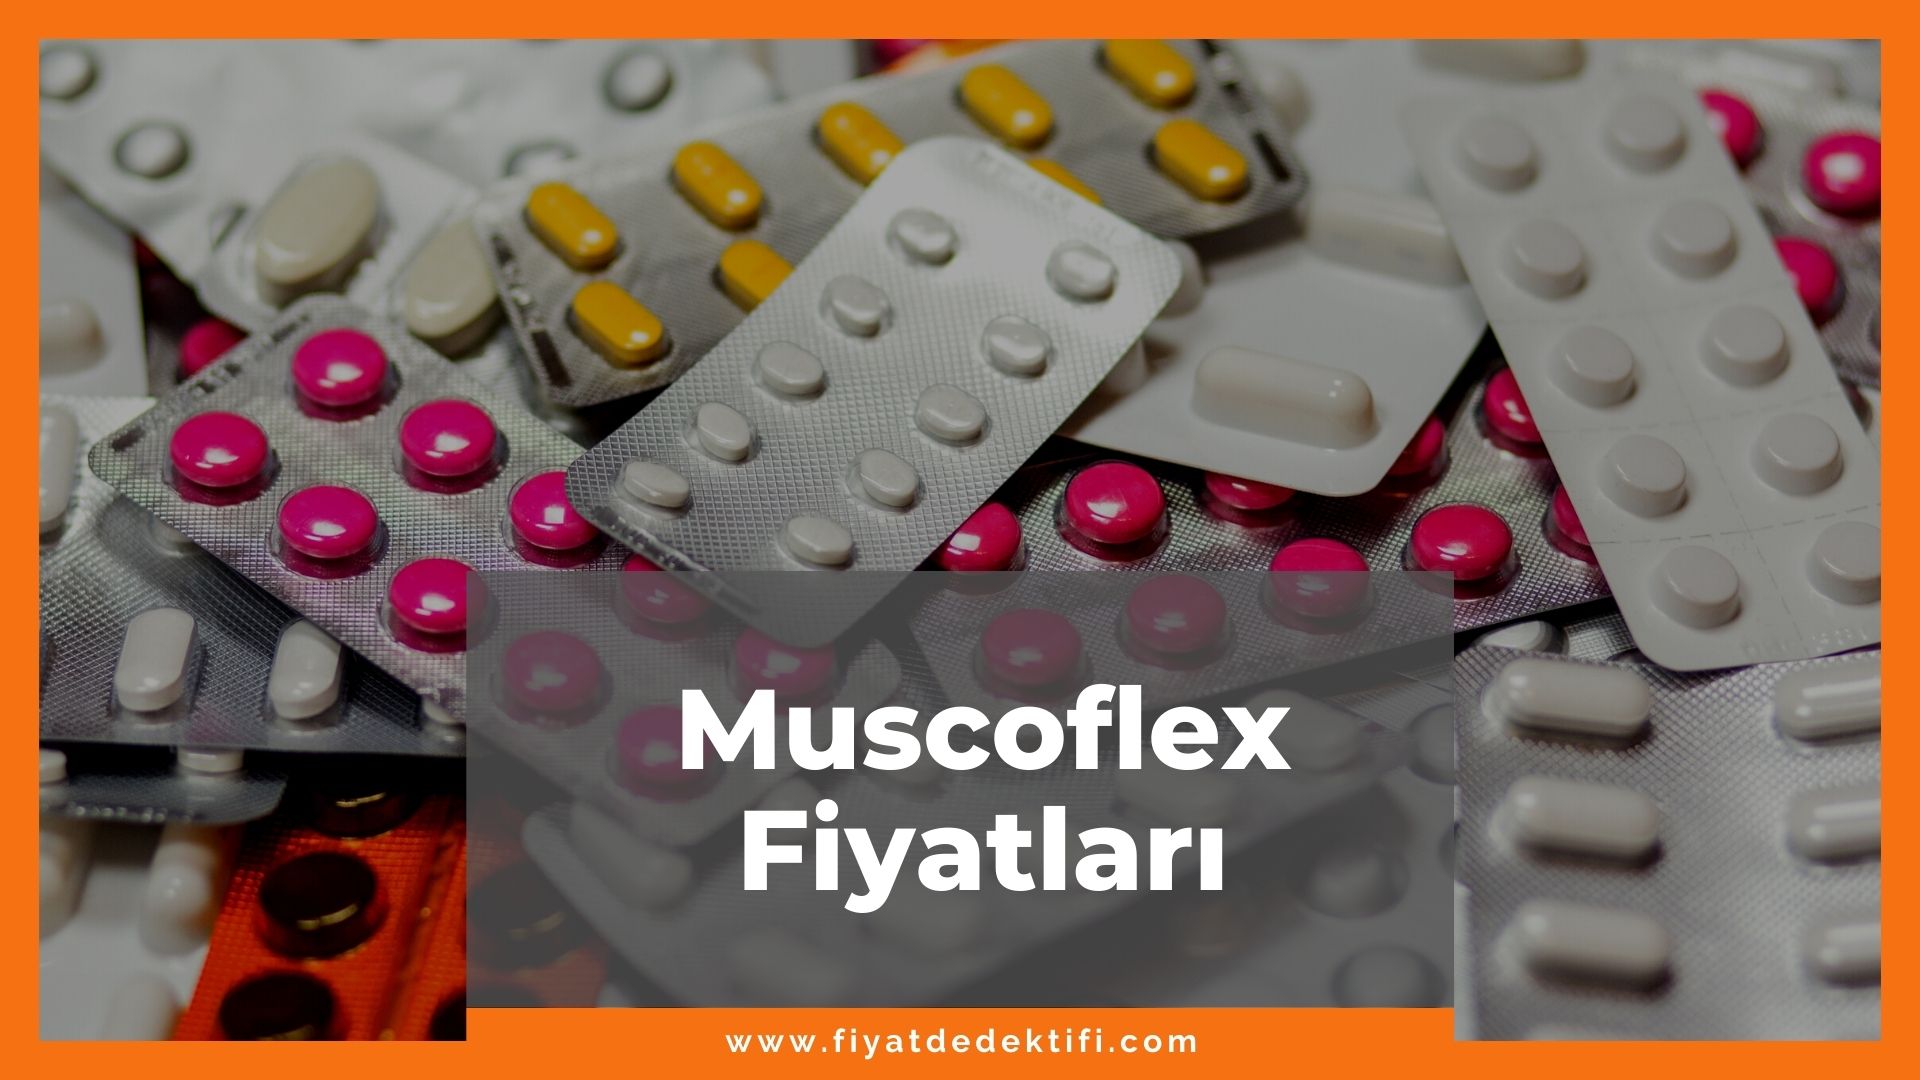 Muscoflex Fiyat 2021, Muscoflex Duo Jel Krem Fiyatı, Muscoflex Hap Fiyatı, muscoflex zamlandı mı, muscoflex zamlı fiyat ne kadar oldu